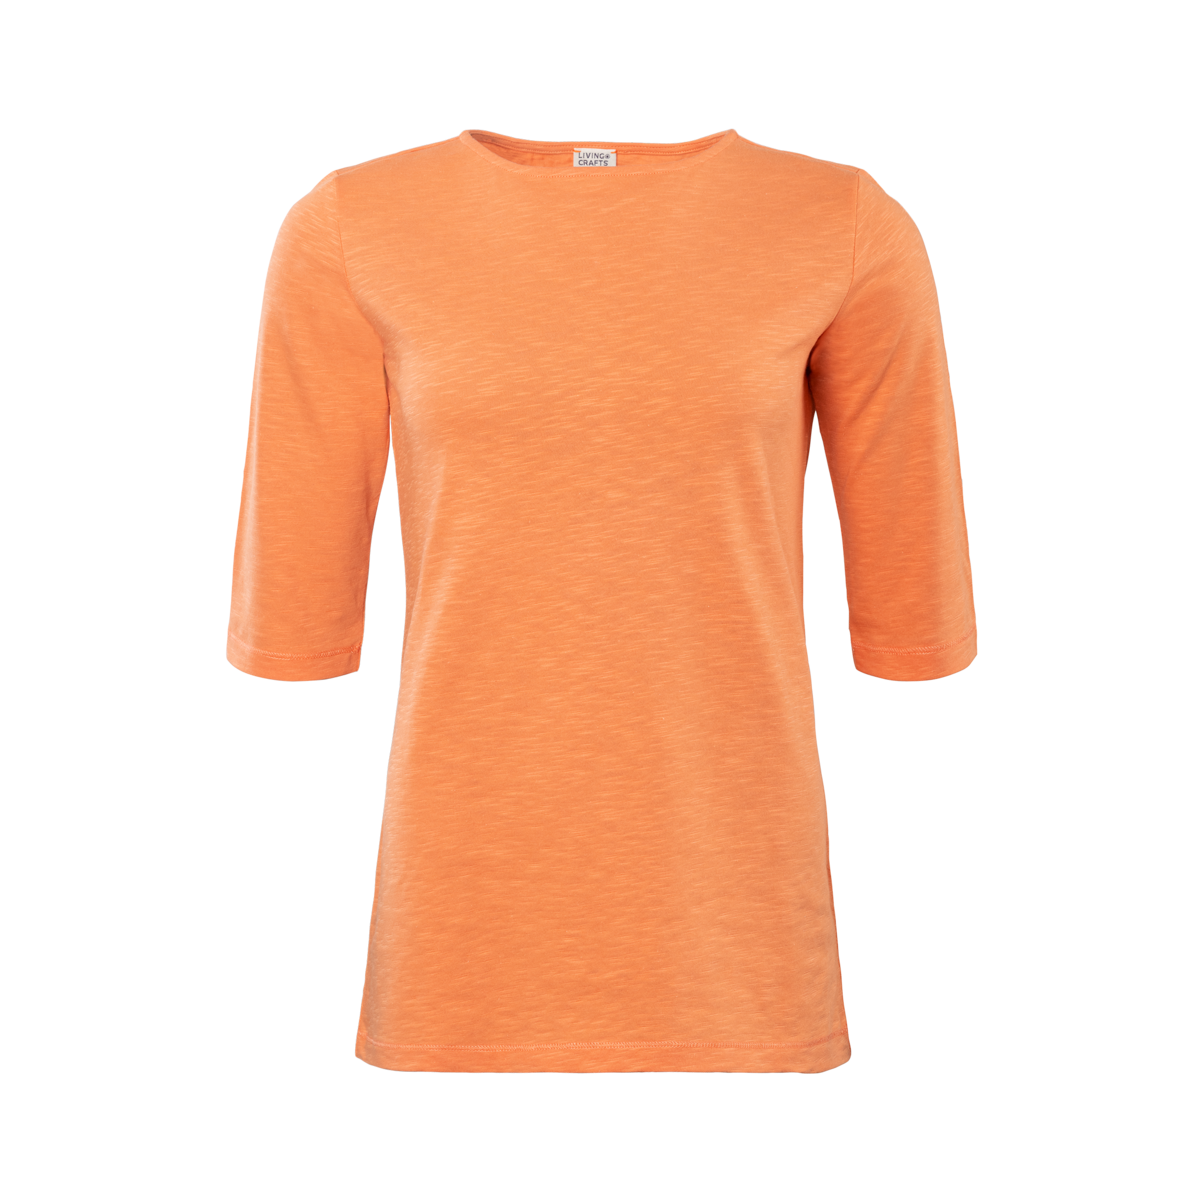 Orange T-shirt, CHLOE